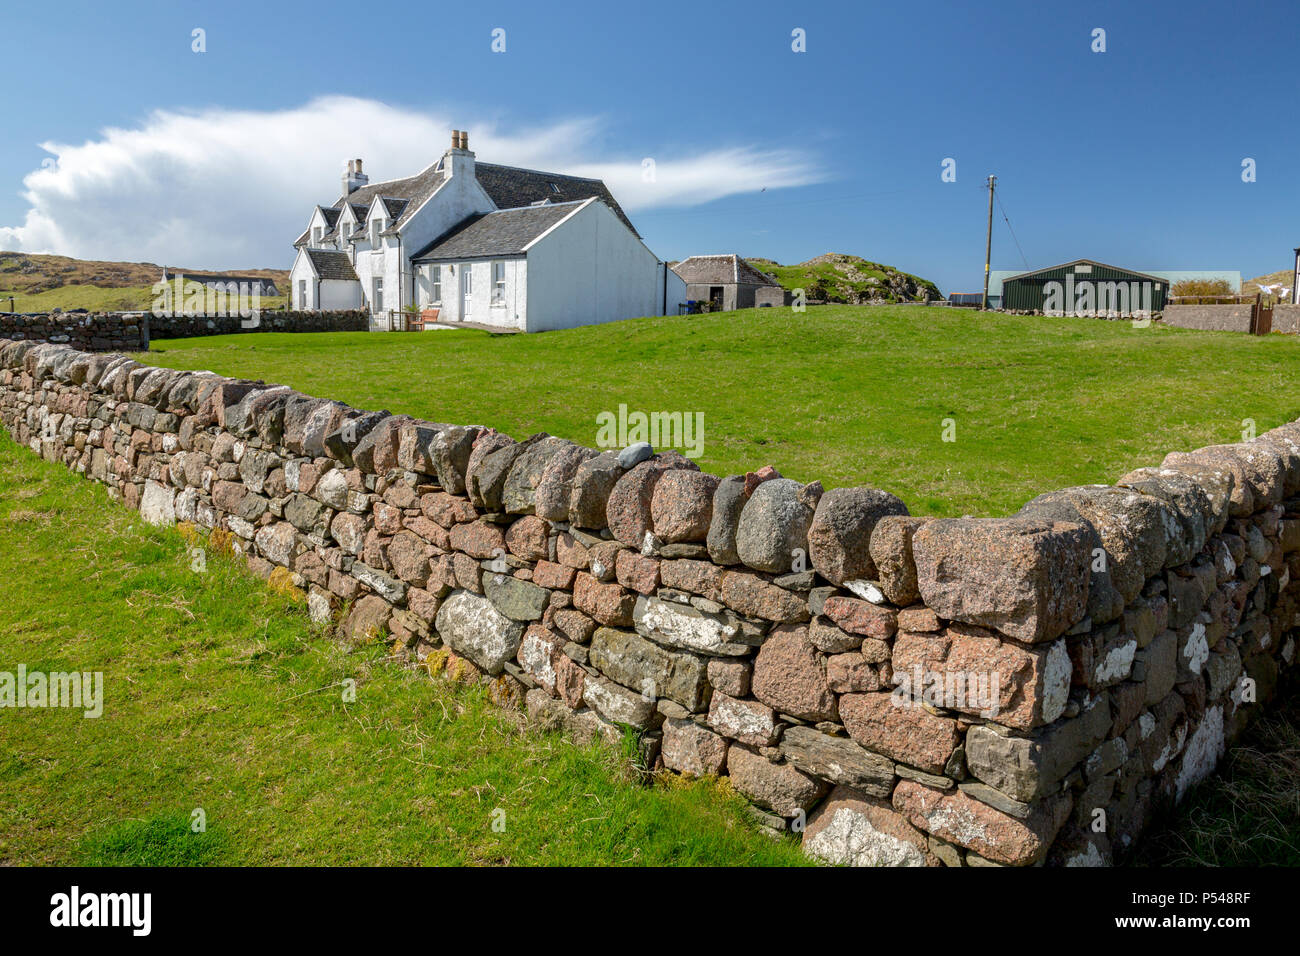 Un cas isolé cottage blanchi à l'intérieur d'un mur de granit pierres sèches sur l'Hebridean island d'Iona, Argyll and Bute, Ecosse, Royaume-Uni Banque D'Images